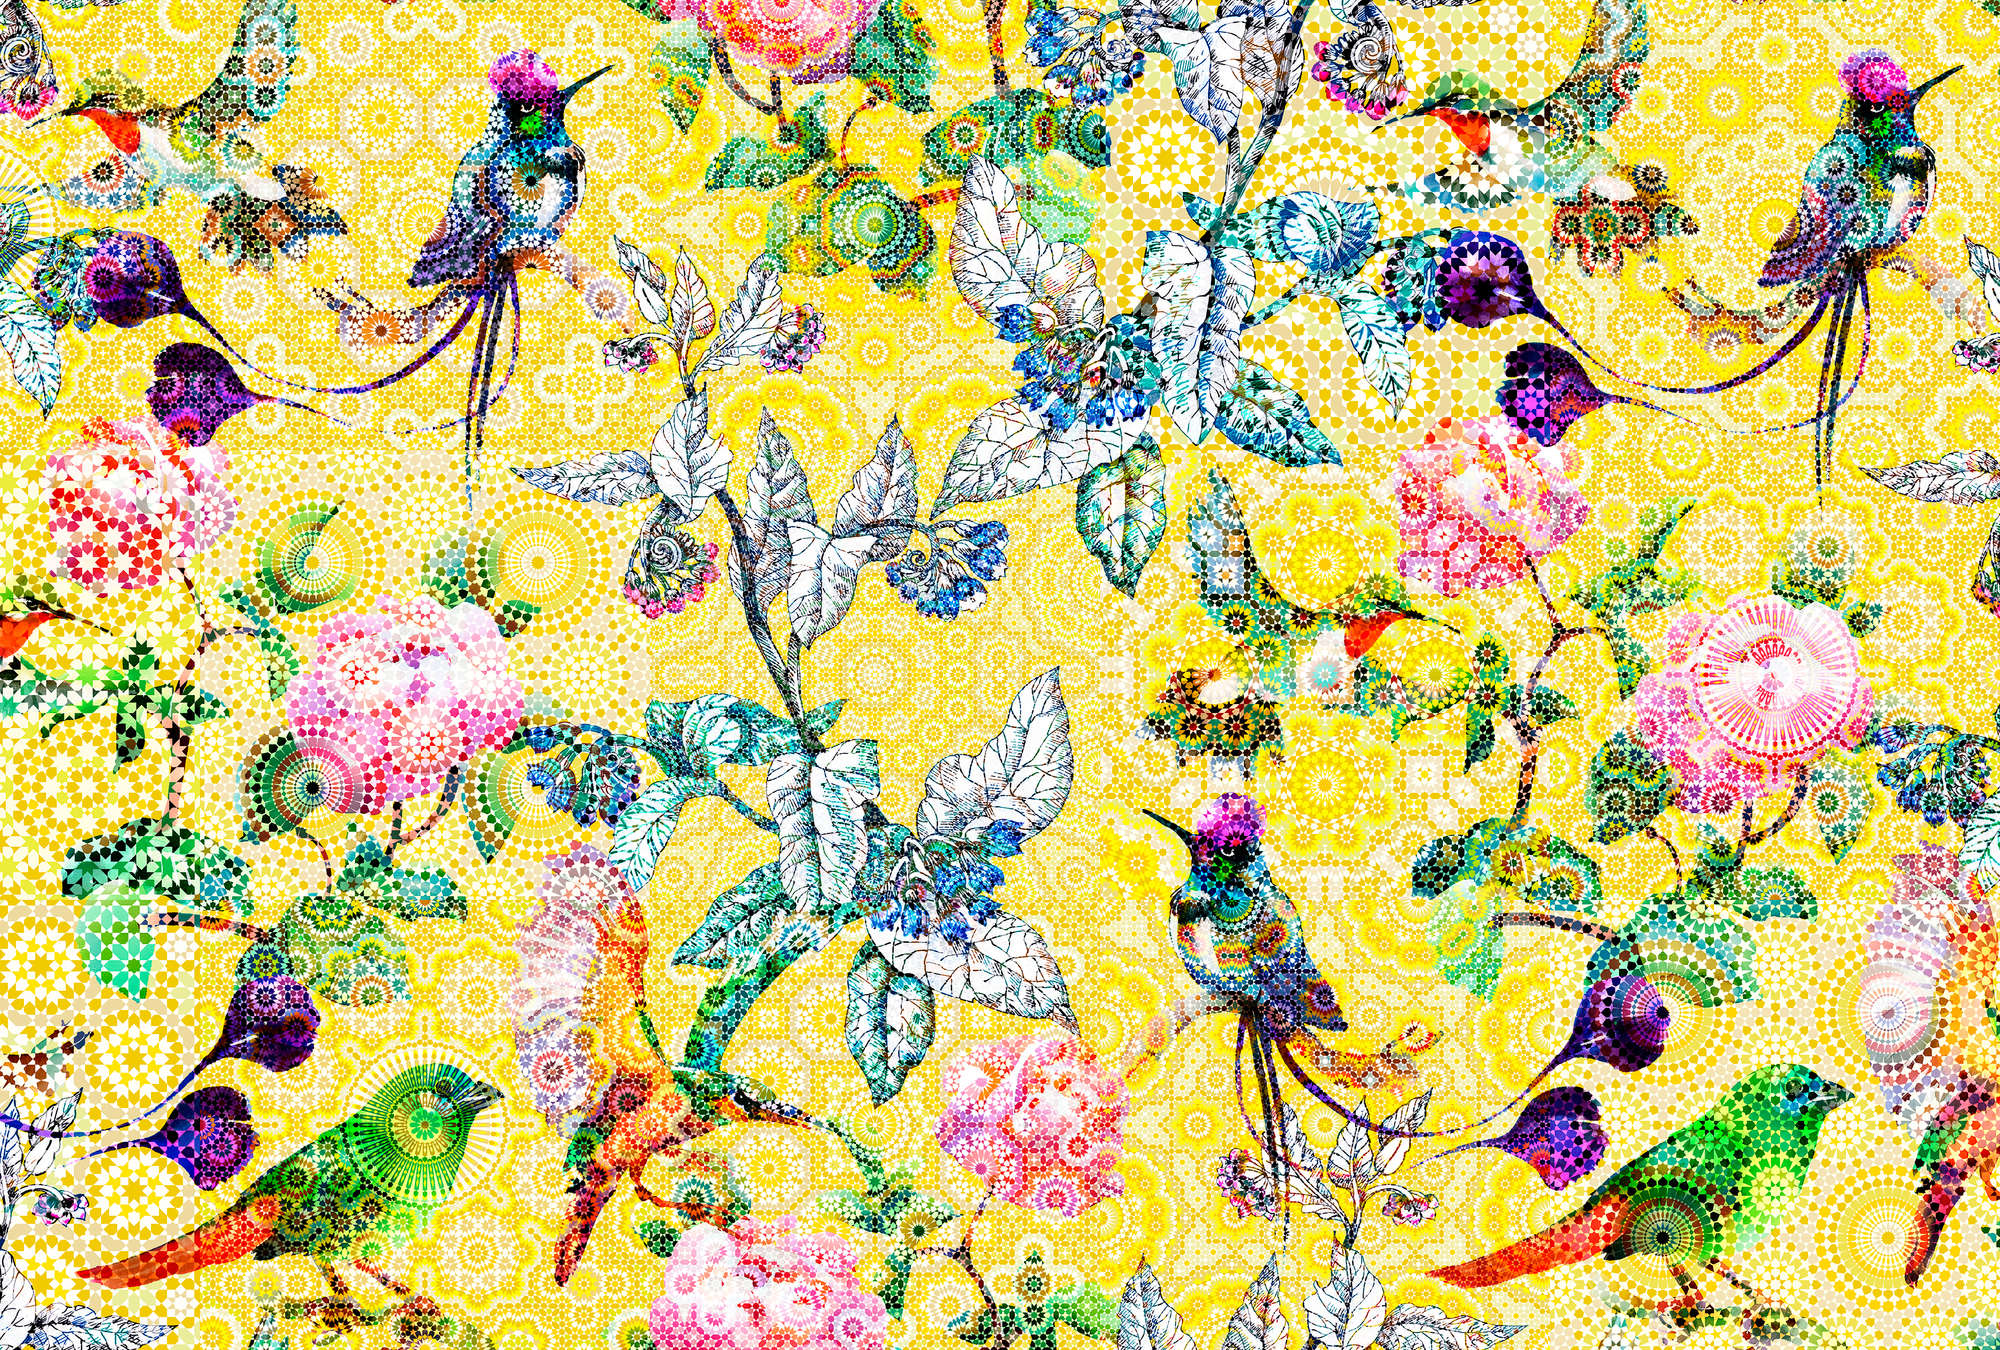             Muurschildering exotische bloemen mozaïek - Geel, Groen
        